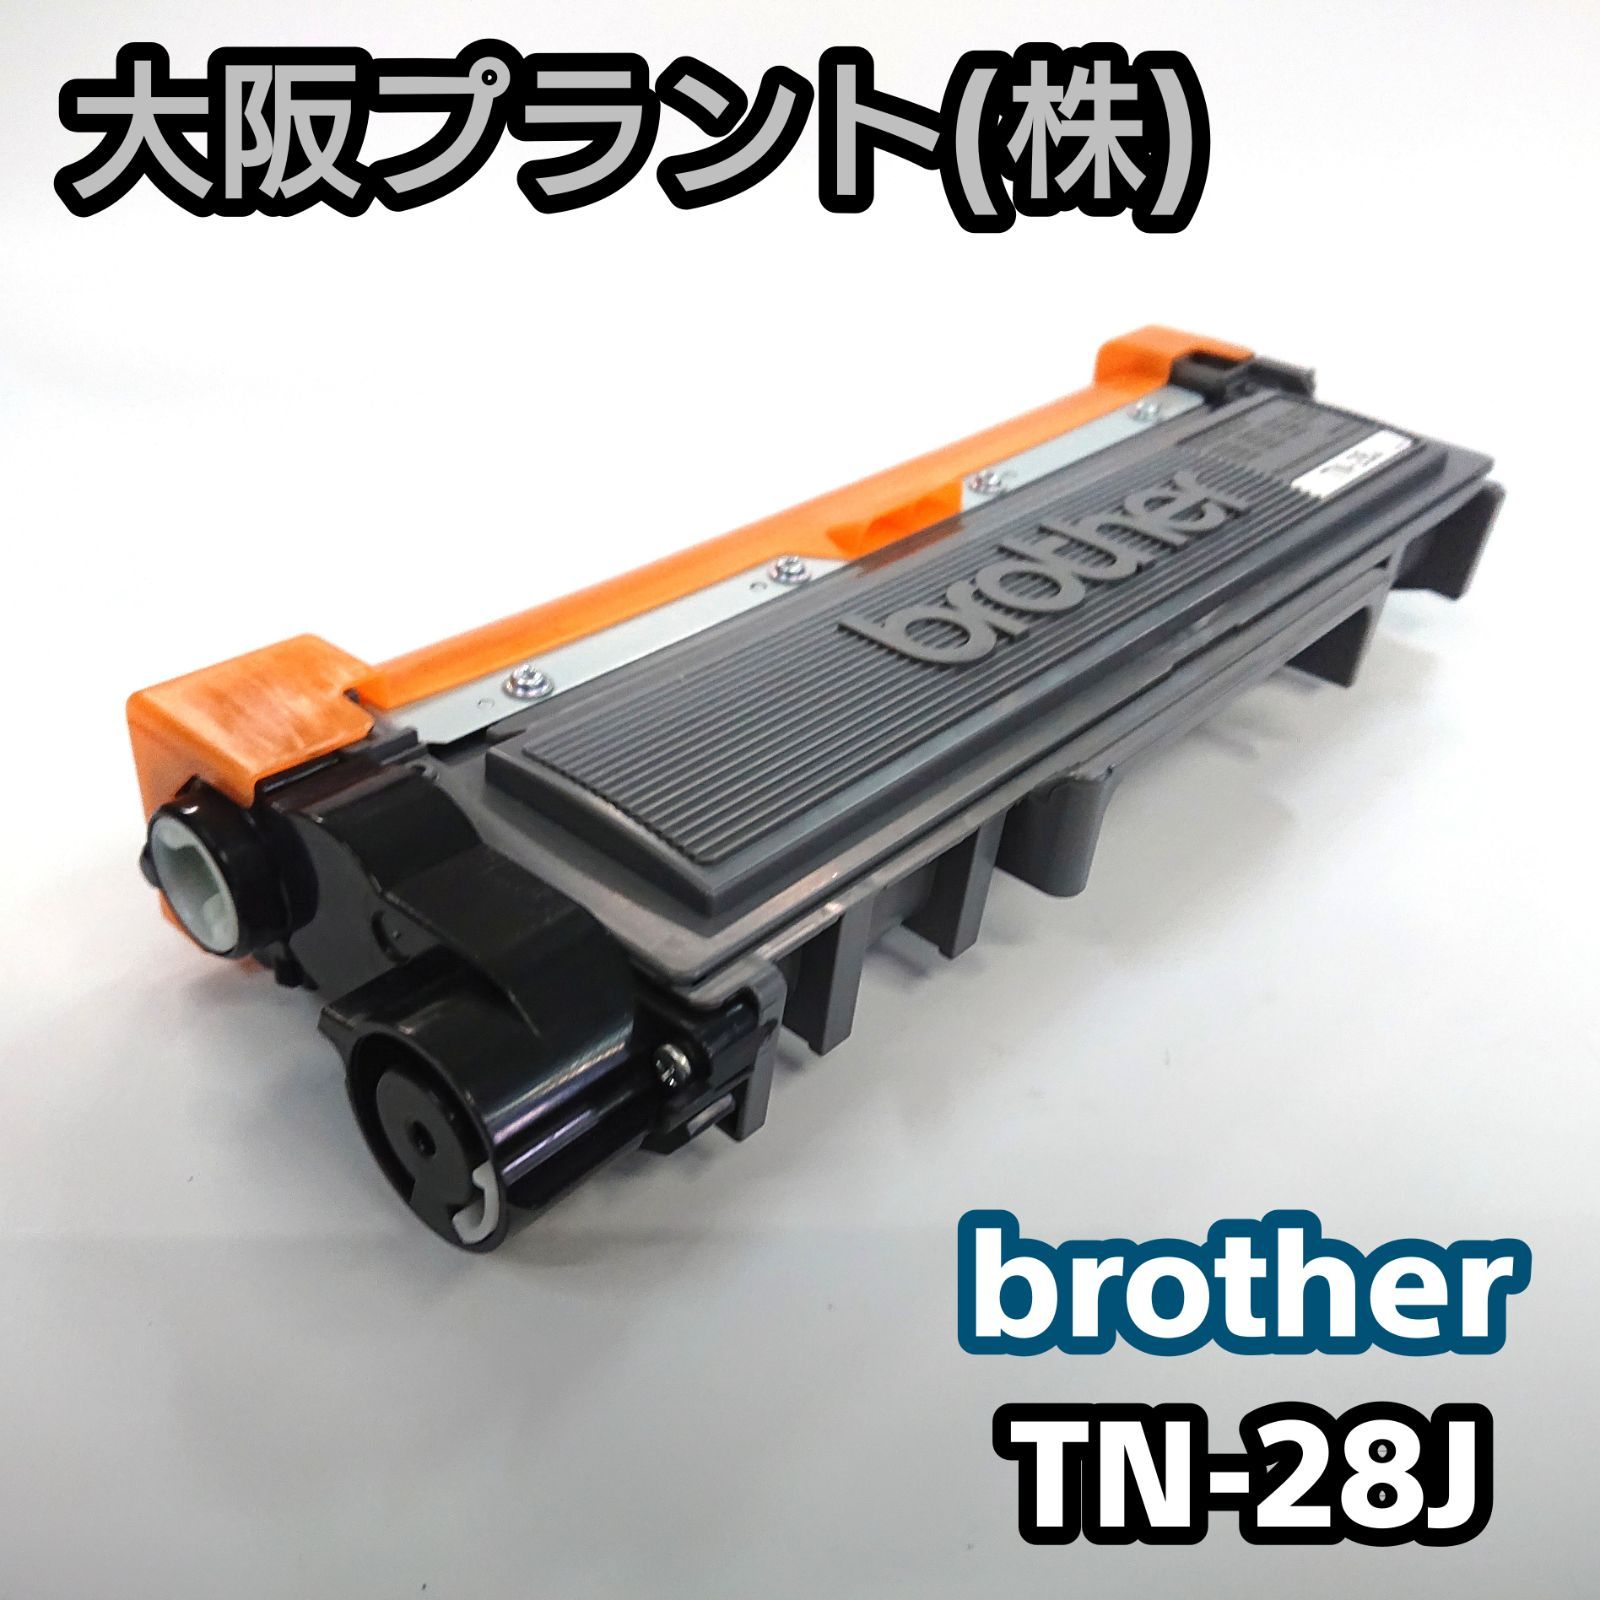 【特別価格】再生 ブラザー TN-28J